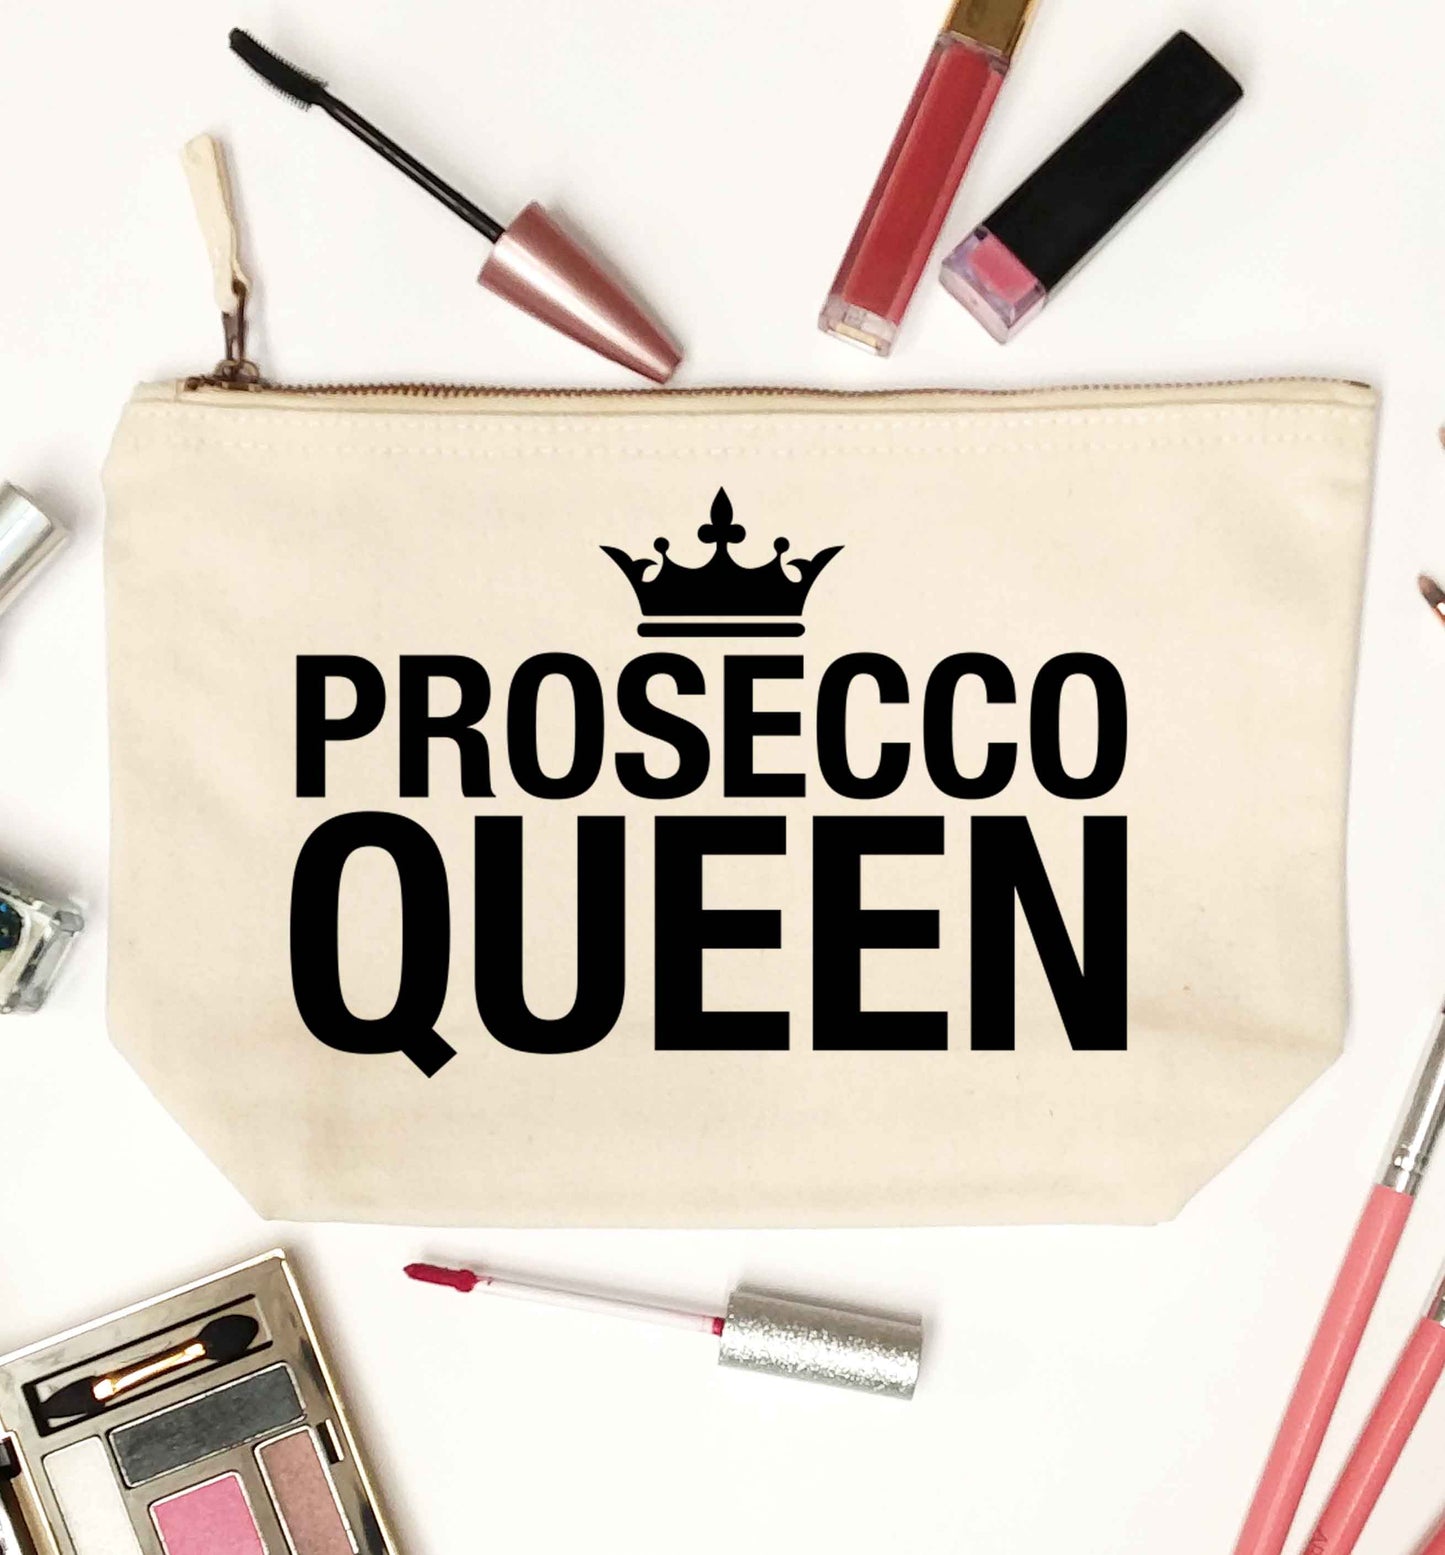 Prosecco queen natural makeup bag